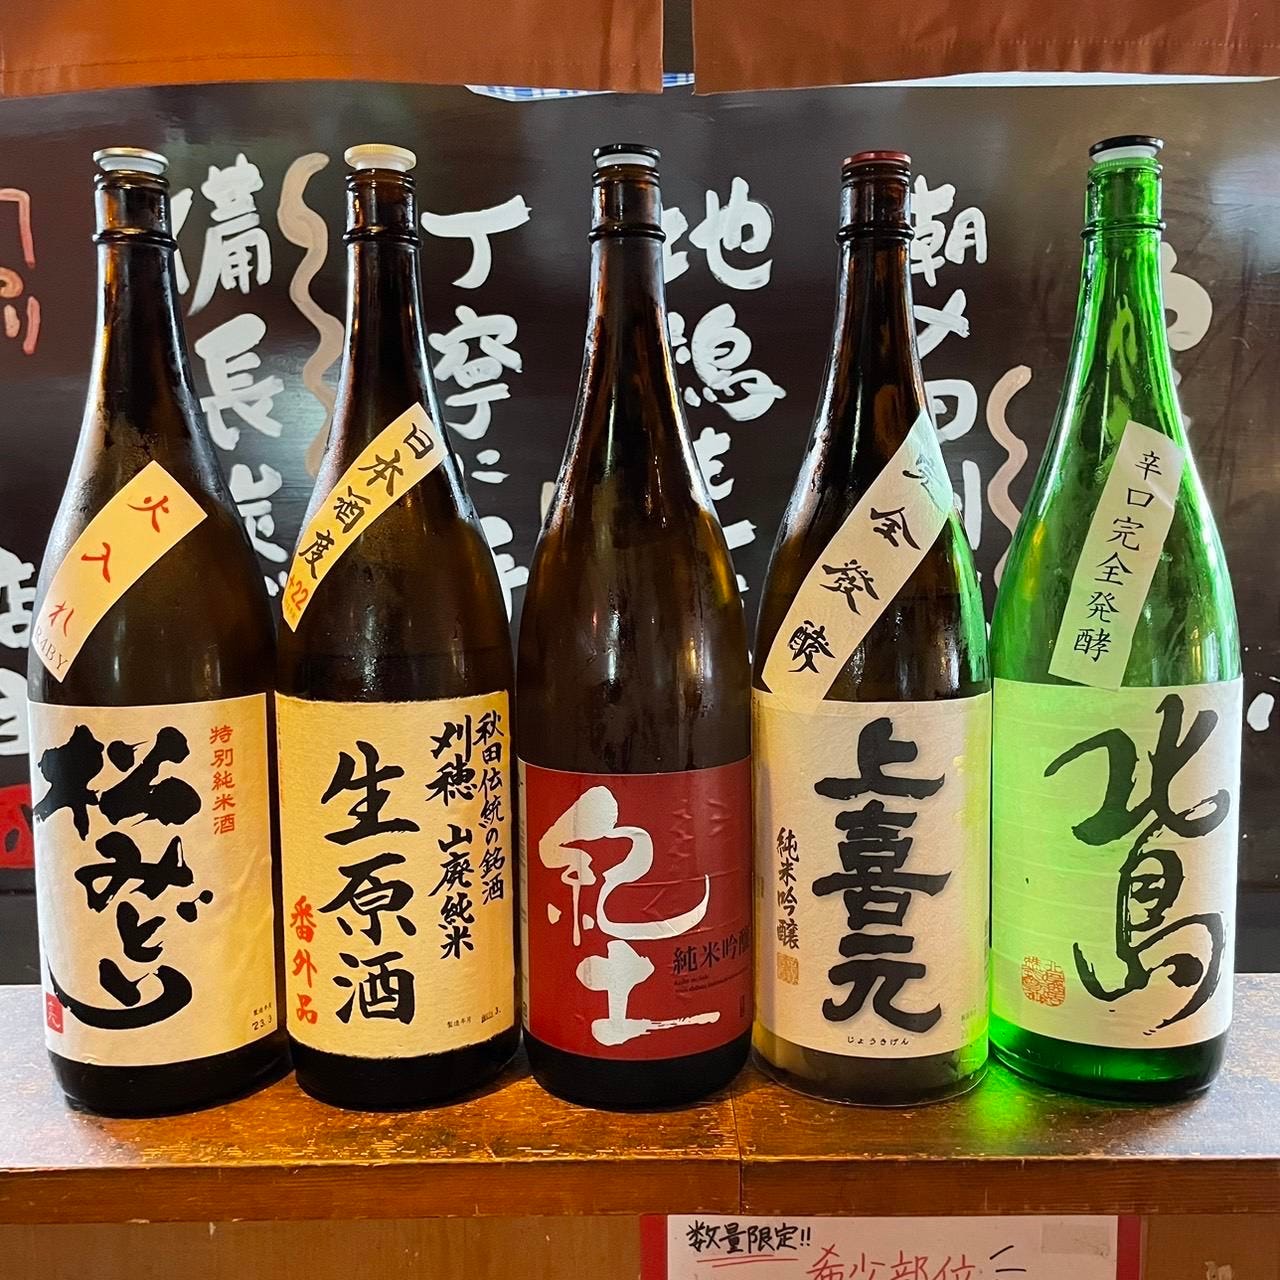 タレ/塩それぞれの焼鳥に合う日本酒を厳選してご提案